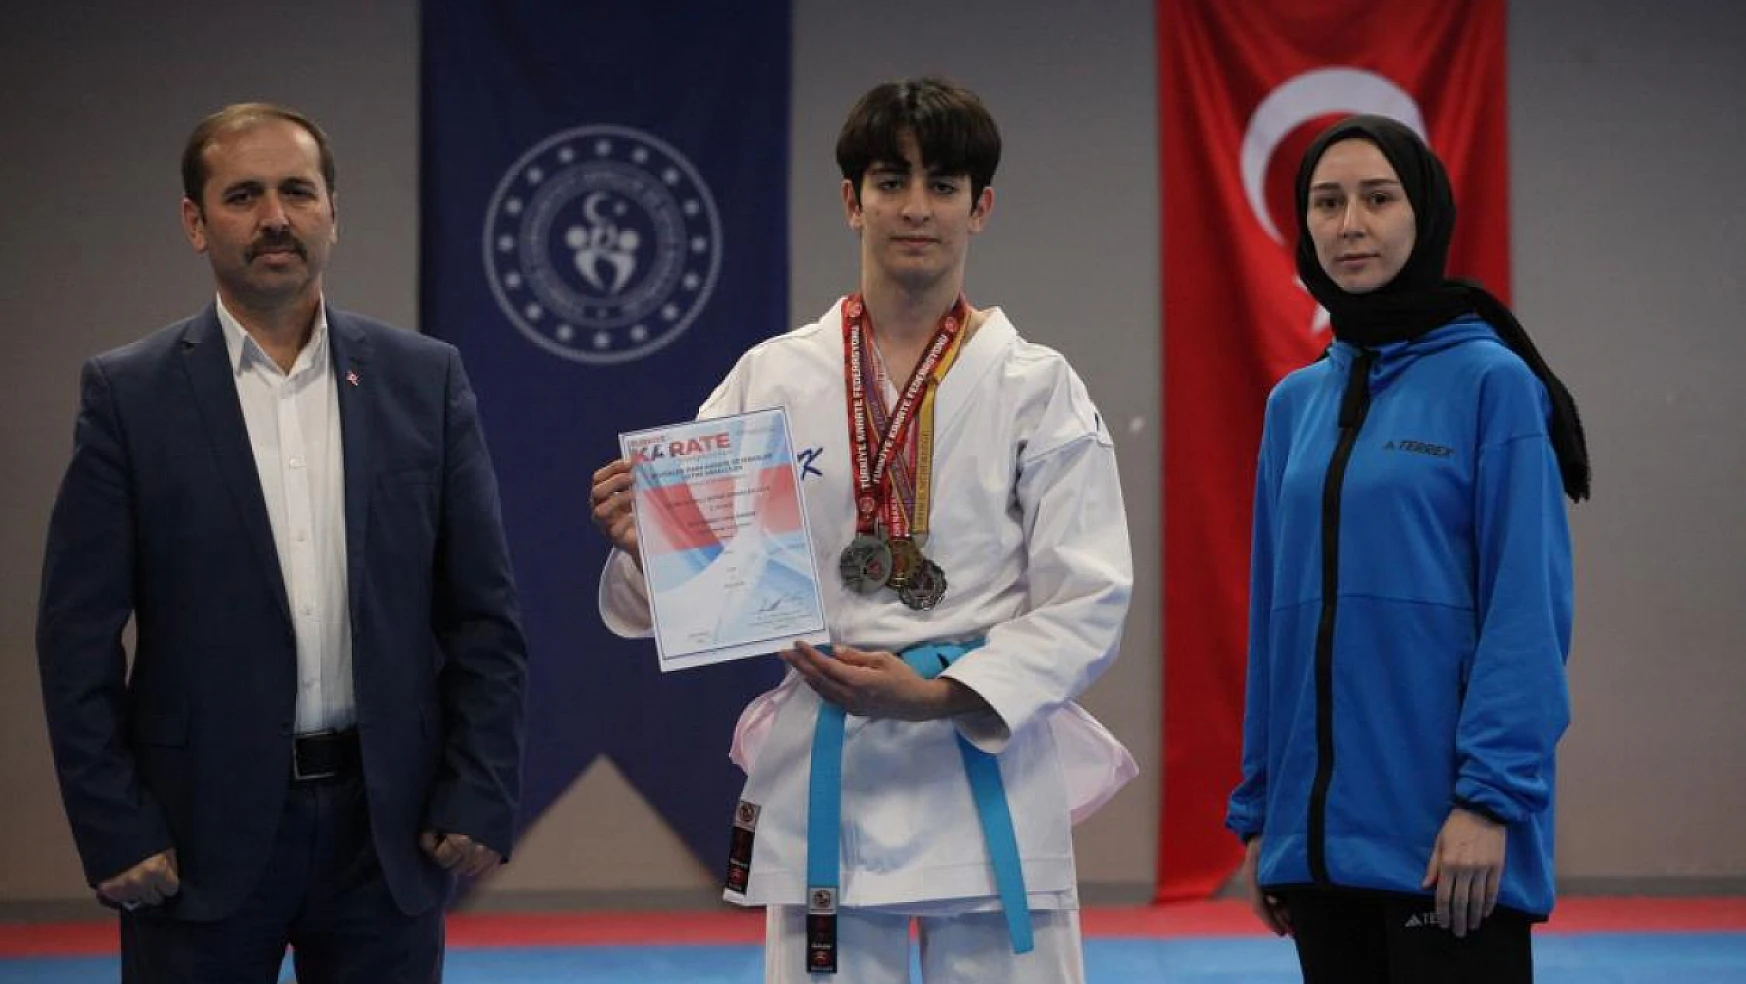 Konya'da yaşayan İşitme engelli 16 yaşındaki Muhammet Taha Baskın'ın hedefi olimpiyatlar!